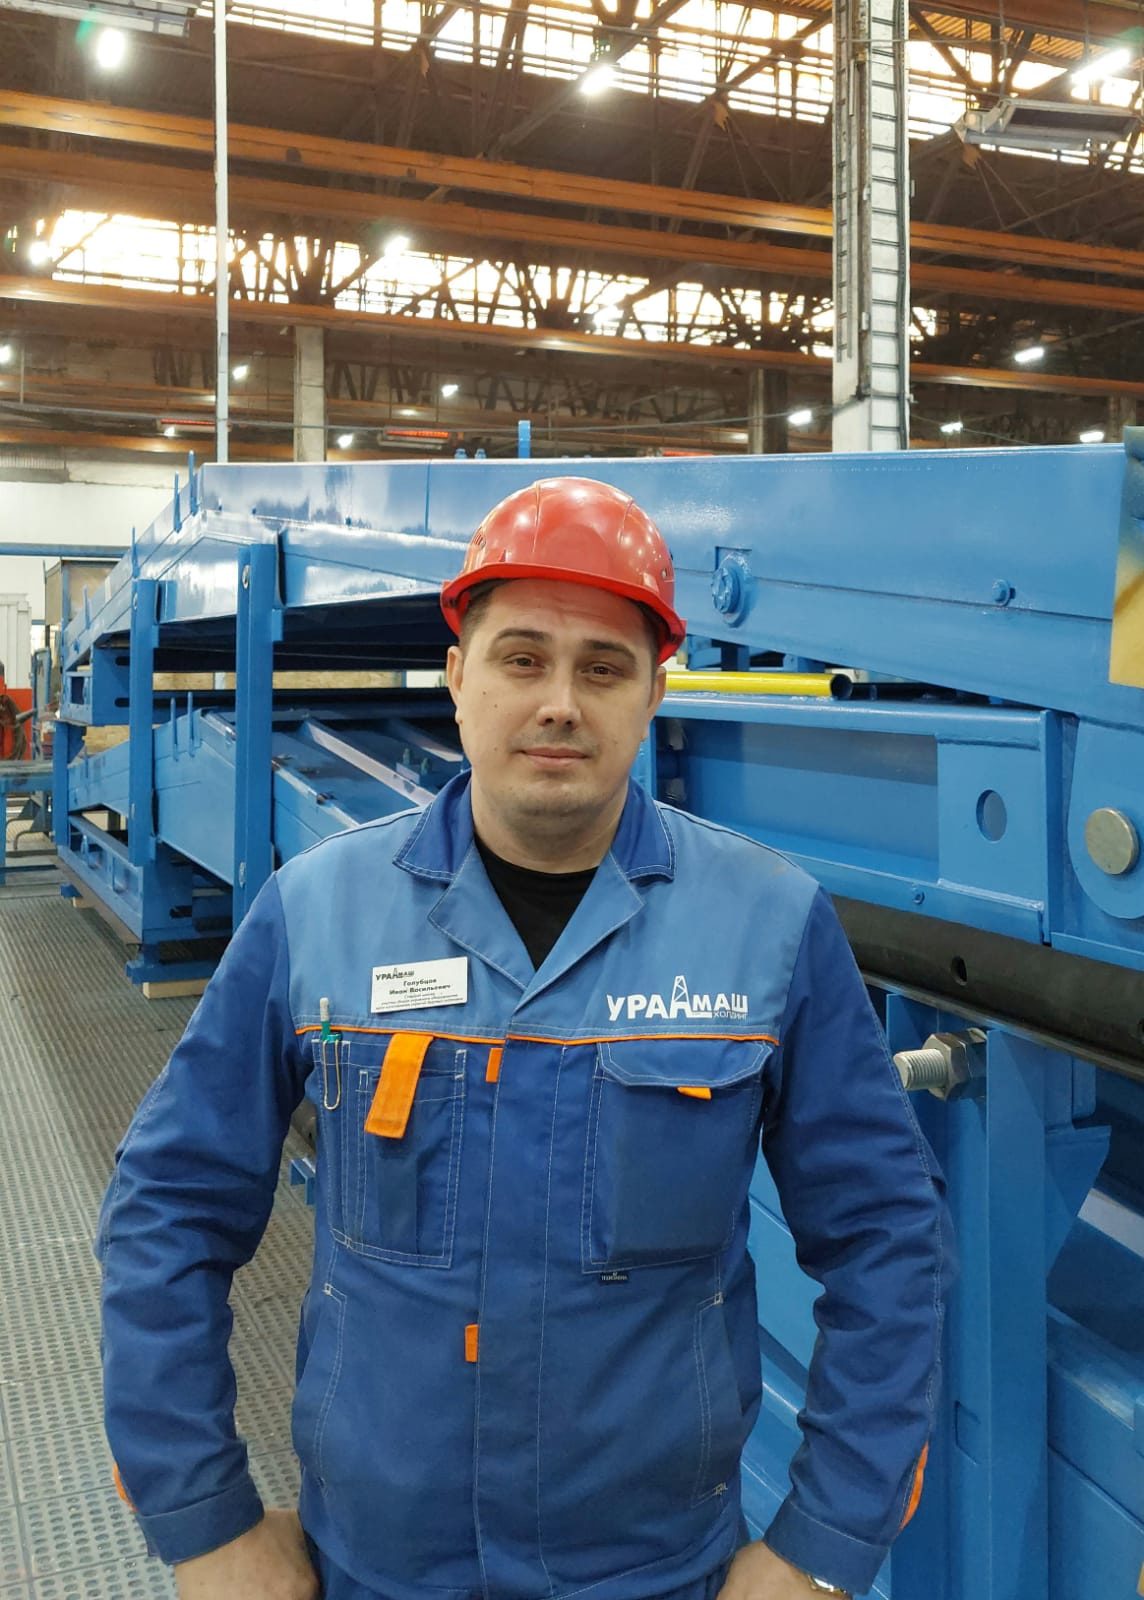 Иван Голубцов трудится на «Заводе БКУ» — филиале предприятия «Уралмаш НГО Холдинг» — пятый год, он устроился на работу, как раз когда был запущен выпуск нефтегазового оборудования